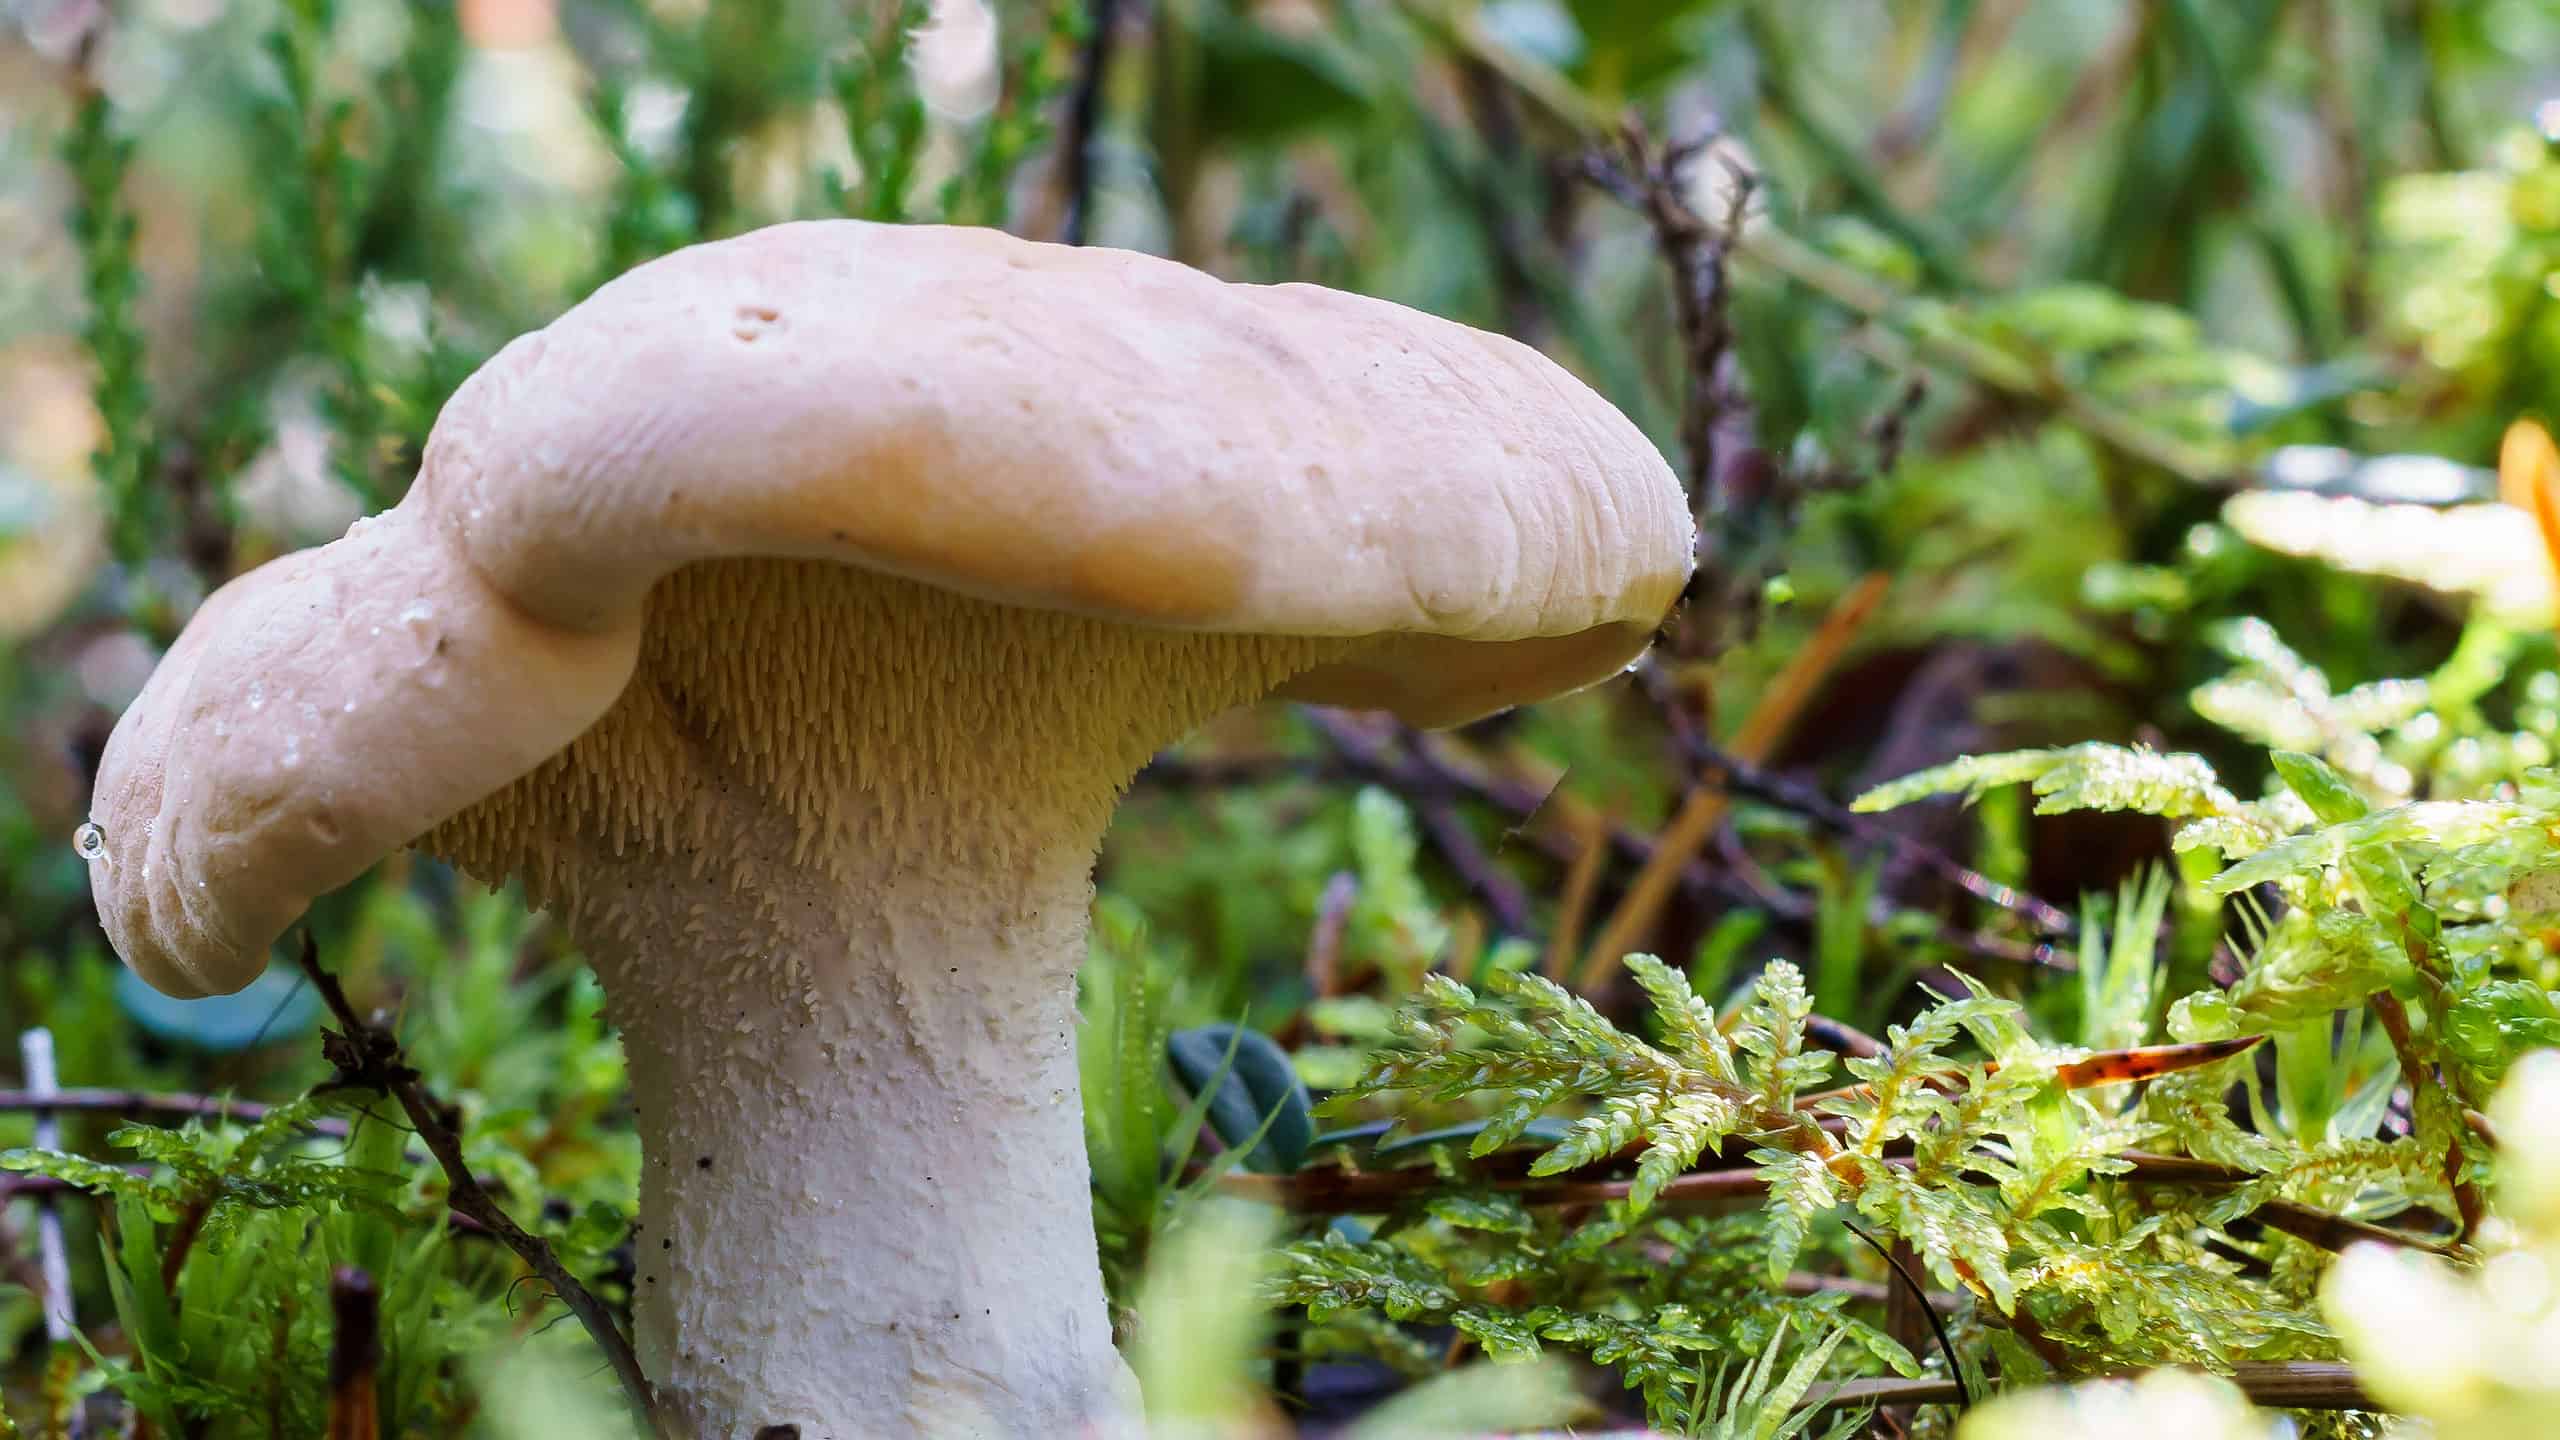 Hedgehog mushroom (Hydnum repandum) growing in the woods